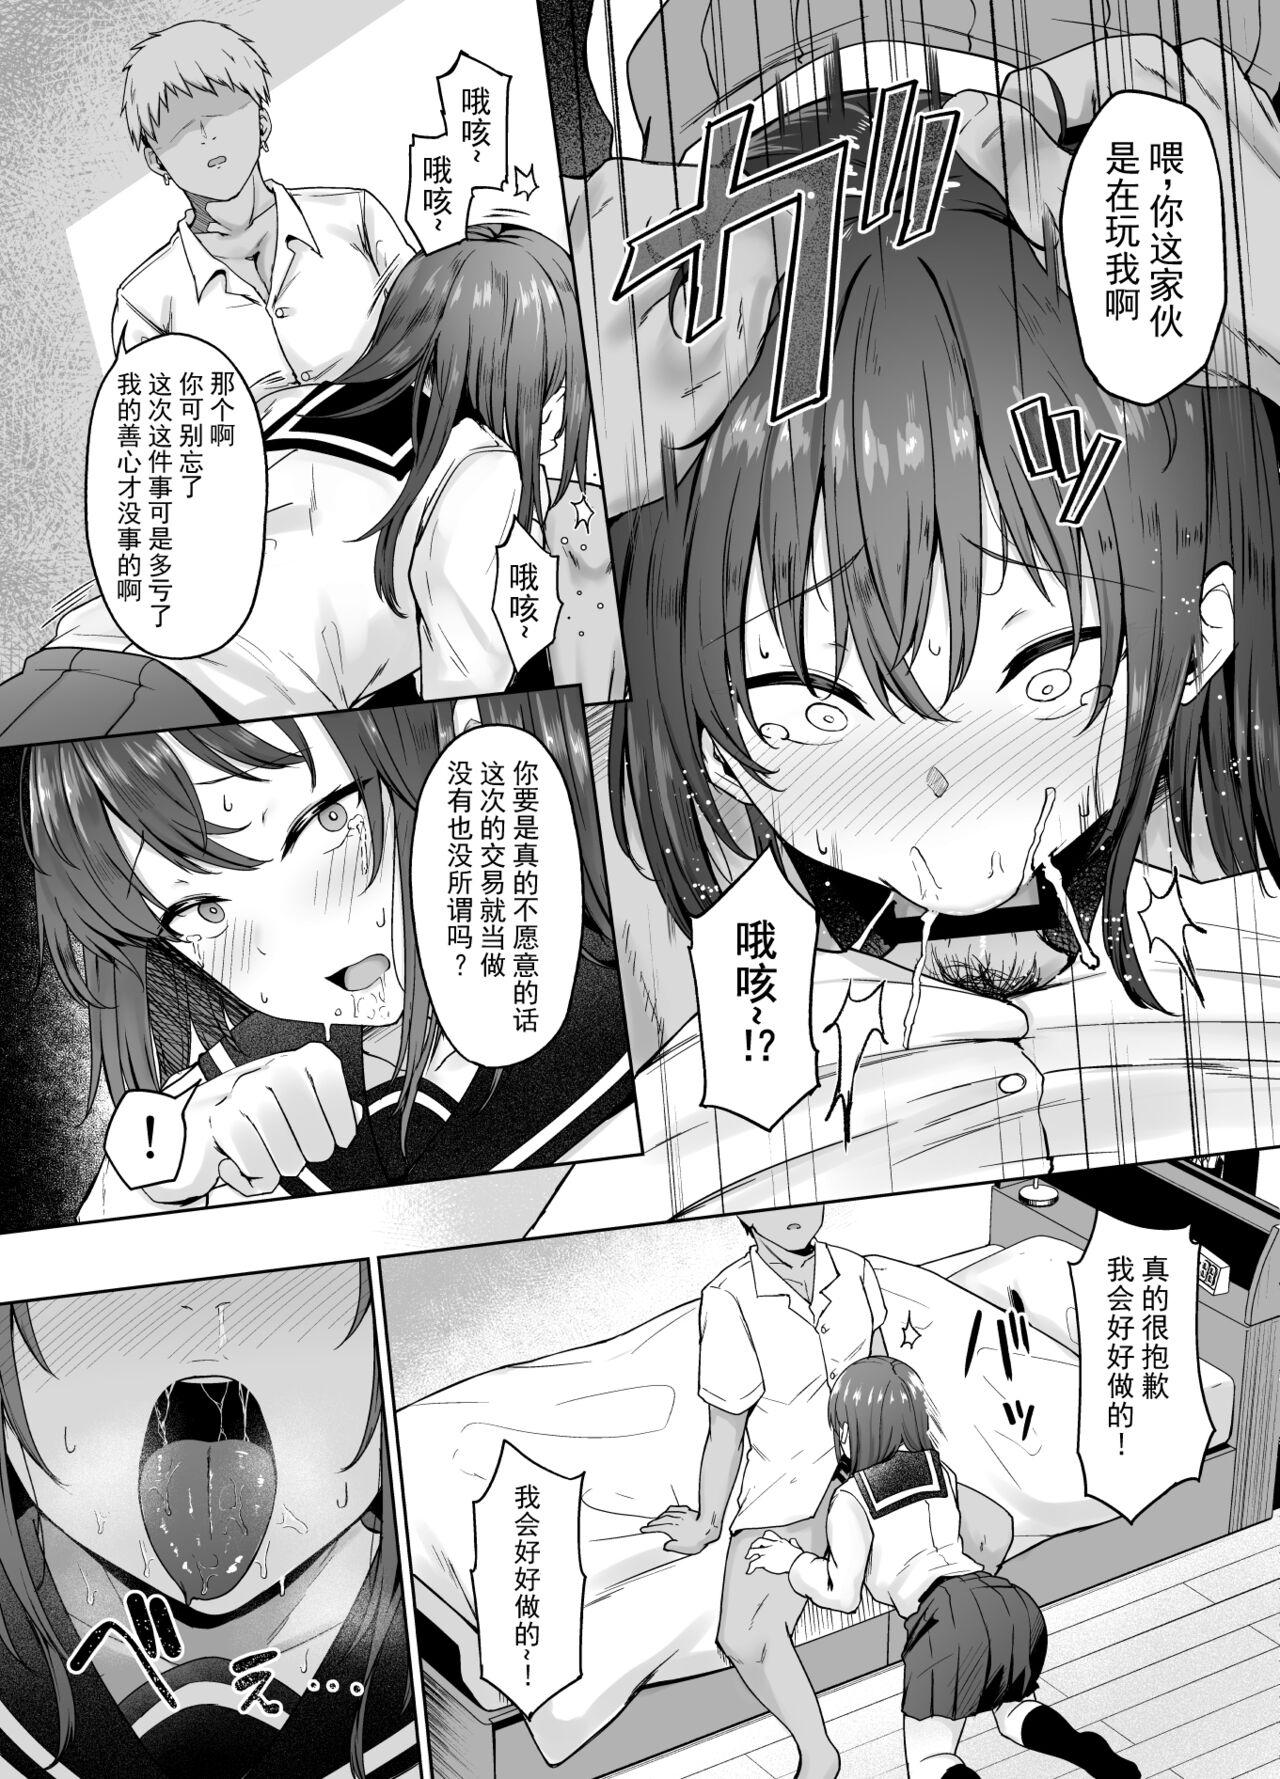 Analfucking Ichizu na Kanojo ga Ochiru Toki | 专一的她堕落的瞬间 - Original Emo - Page 9